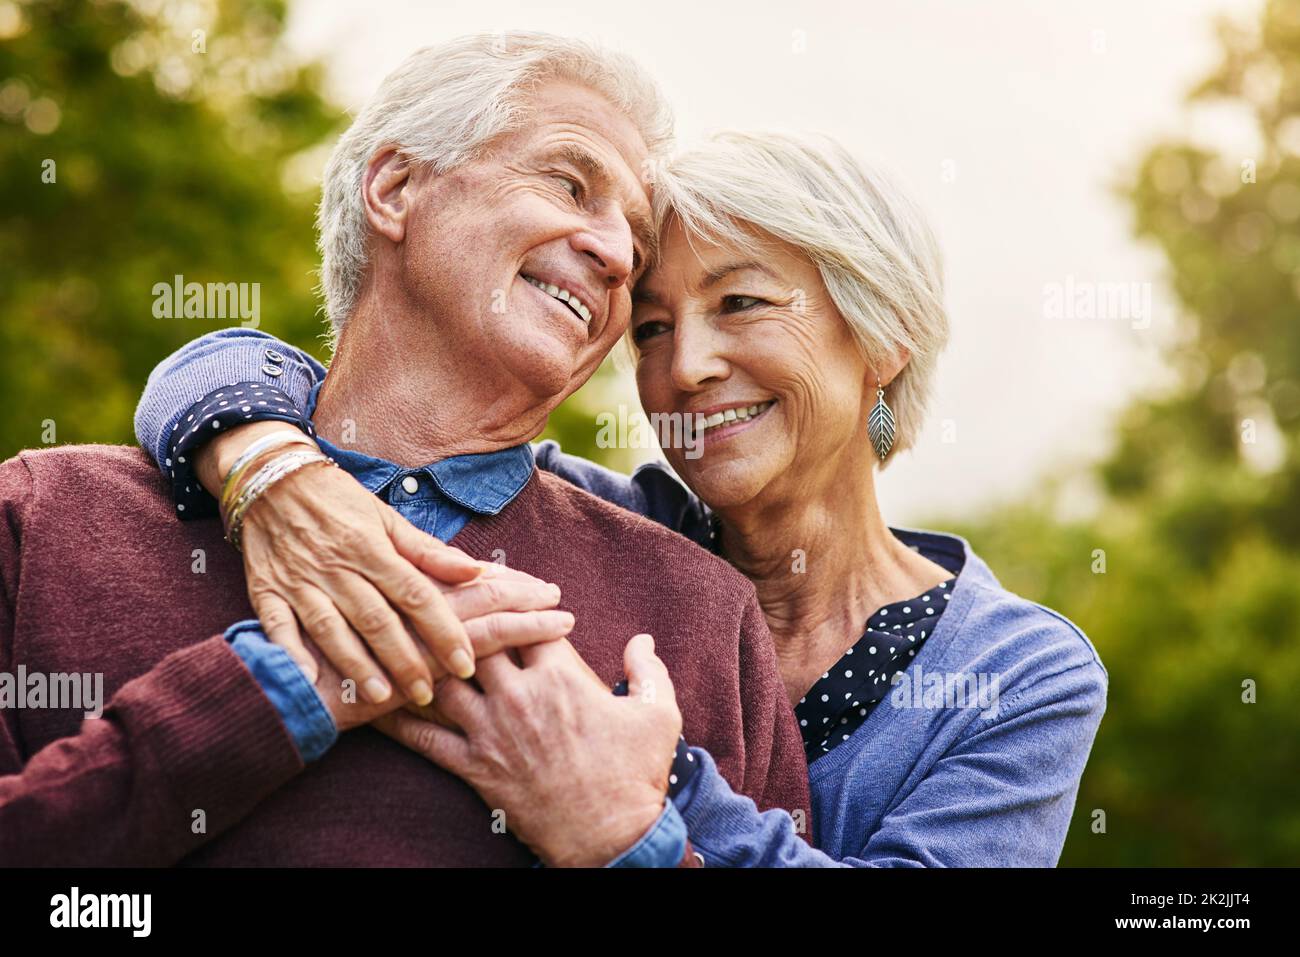 L'amour garde le coeur heureux. Photo d'un couple senior heureux dans le parc. Banque D'Images